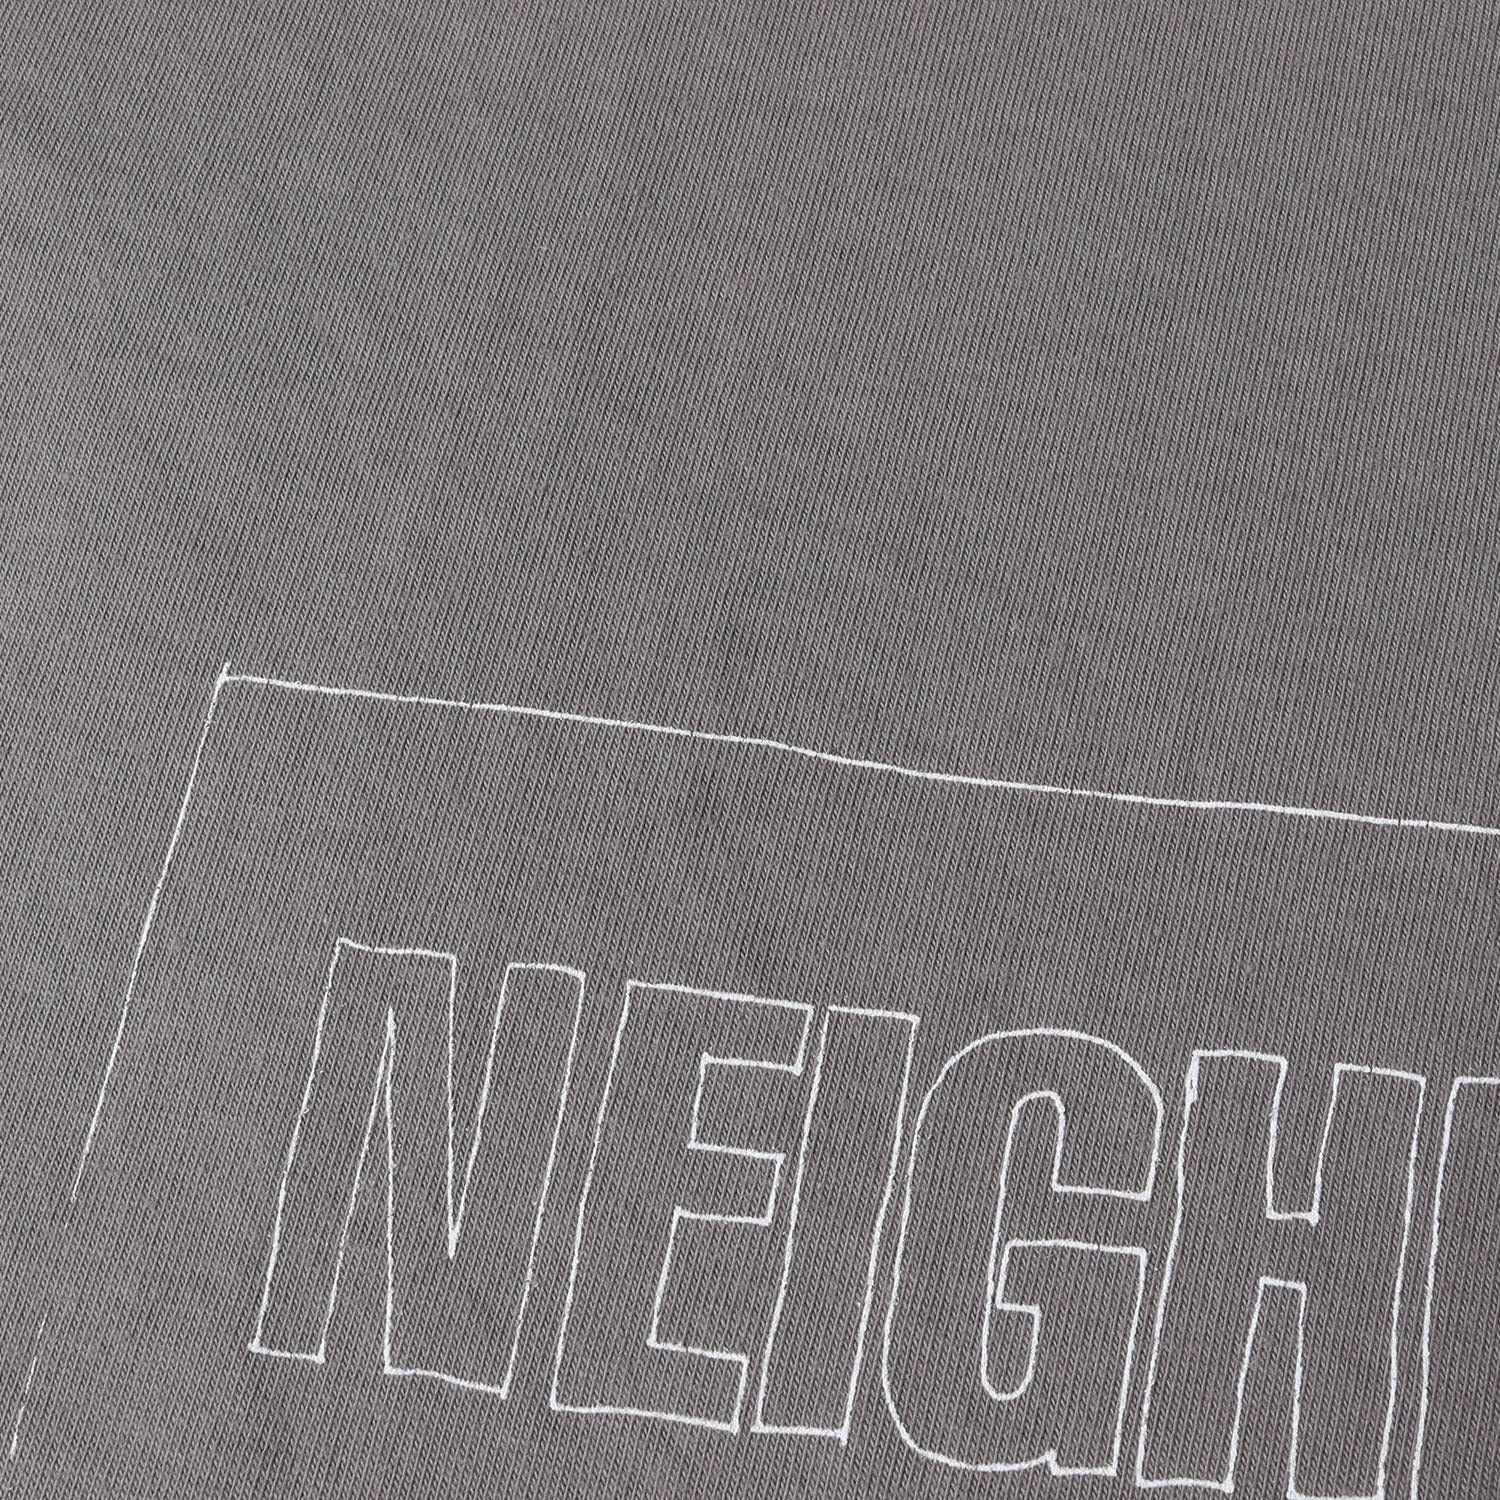 NEIGHBORHOOD ネイバーフッド Tシャツ サイズ:M 22SS ボックスロゴ クルーネック 半袖 Tシャツ NH-14 / C-TEE. SS チャコール トップス カットソー 【メンズ】